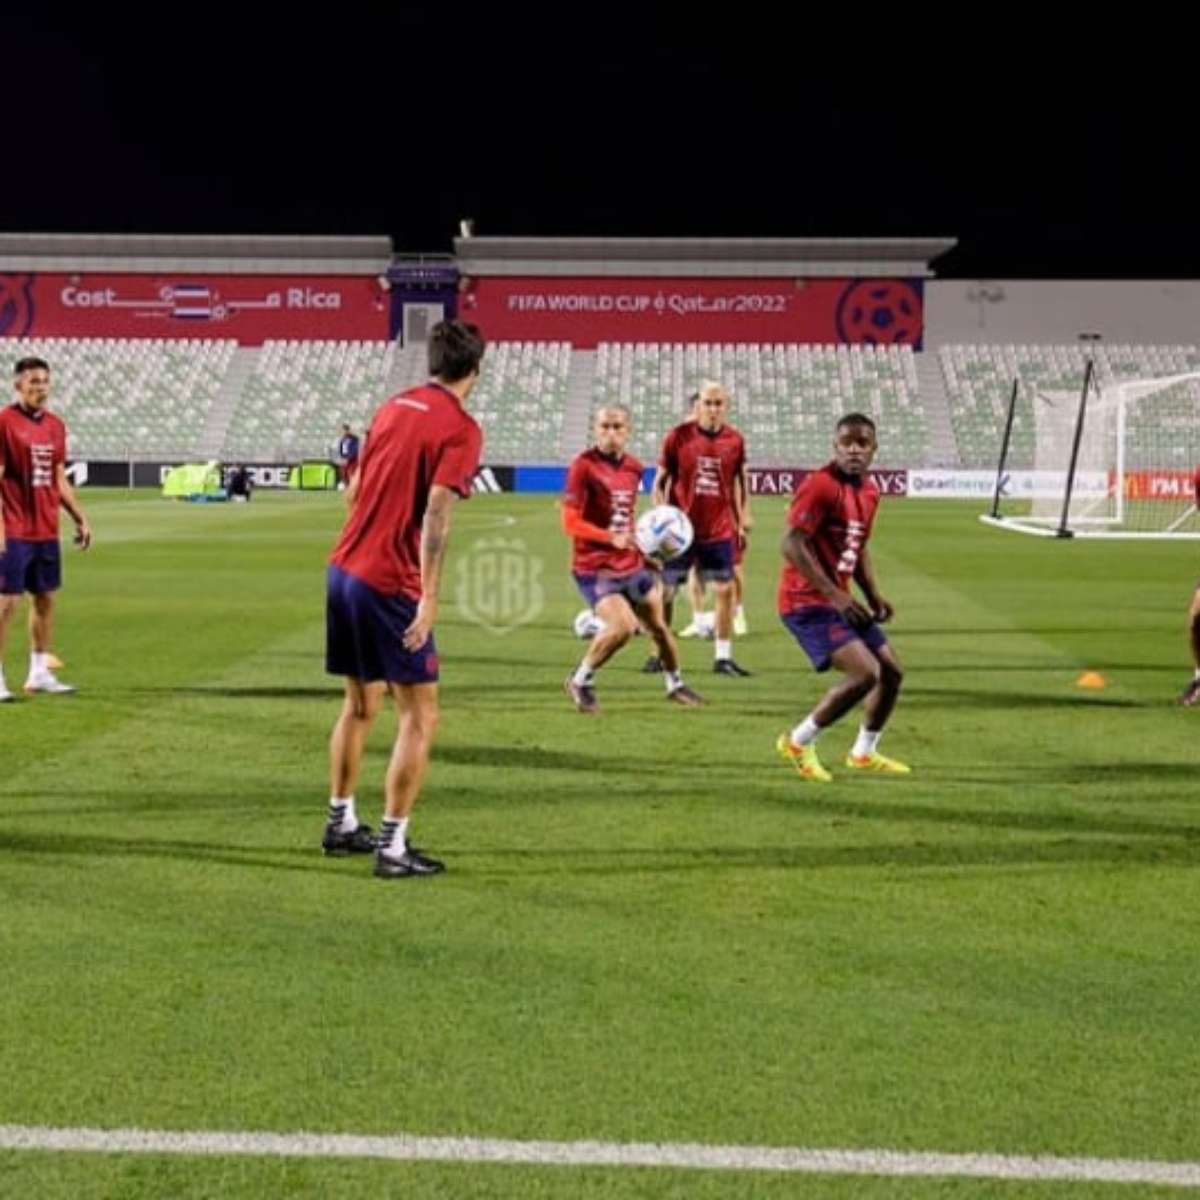 Espanha não permite nenhuma finalização da Costa Rica em goleada - Gazeta  Esportiva - Muito além dos 90 minutos